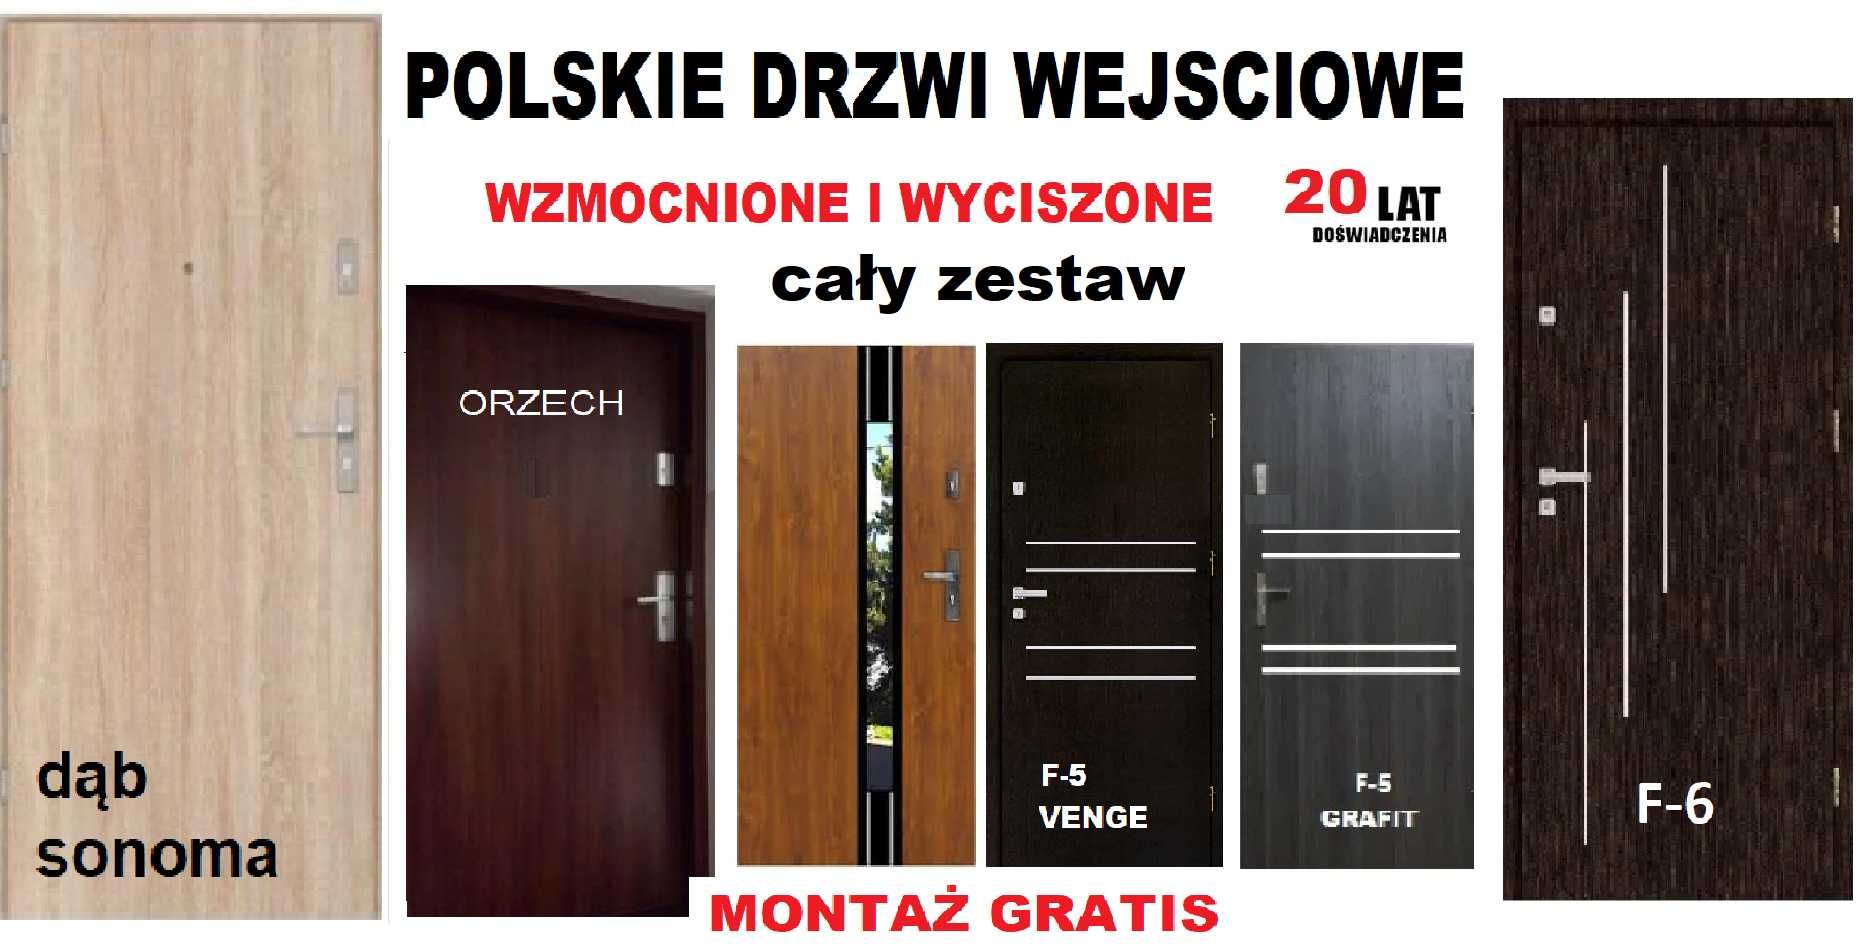 Drzwi ZEWNĘTRZNE WEWNĄTRZKLATKOWE-wejściowe do mieszkania drewniane